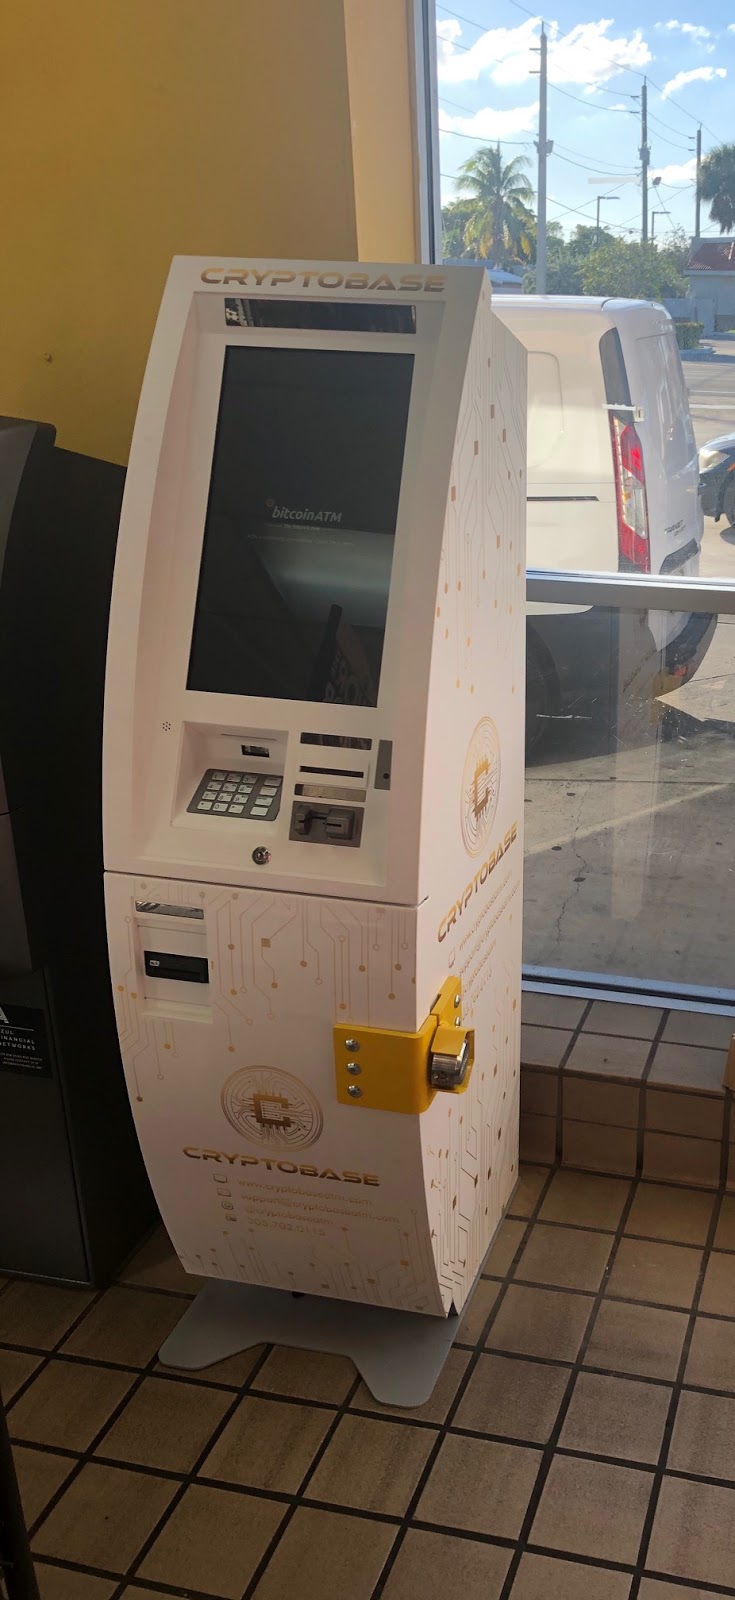 Cryptobase Bitcoin ATM | 815 N Federal Hwy, Hollywood, FL 33020 | Phone: (305) 702-0115